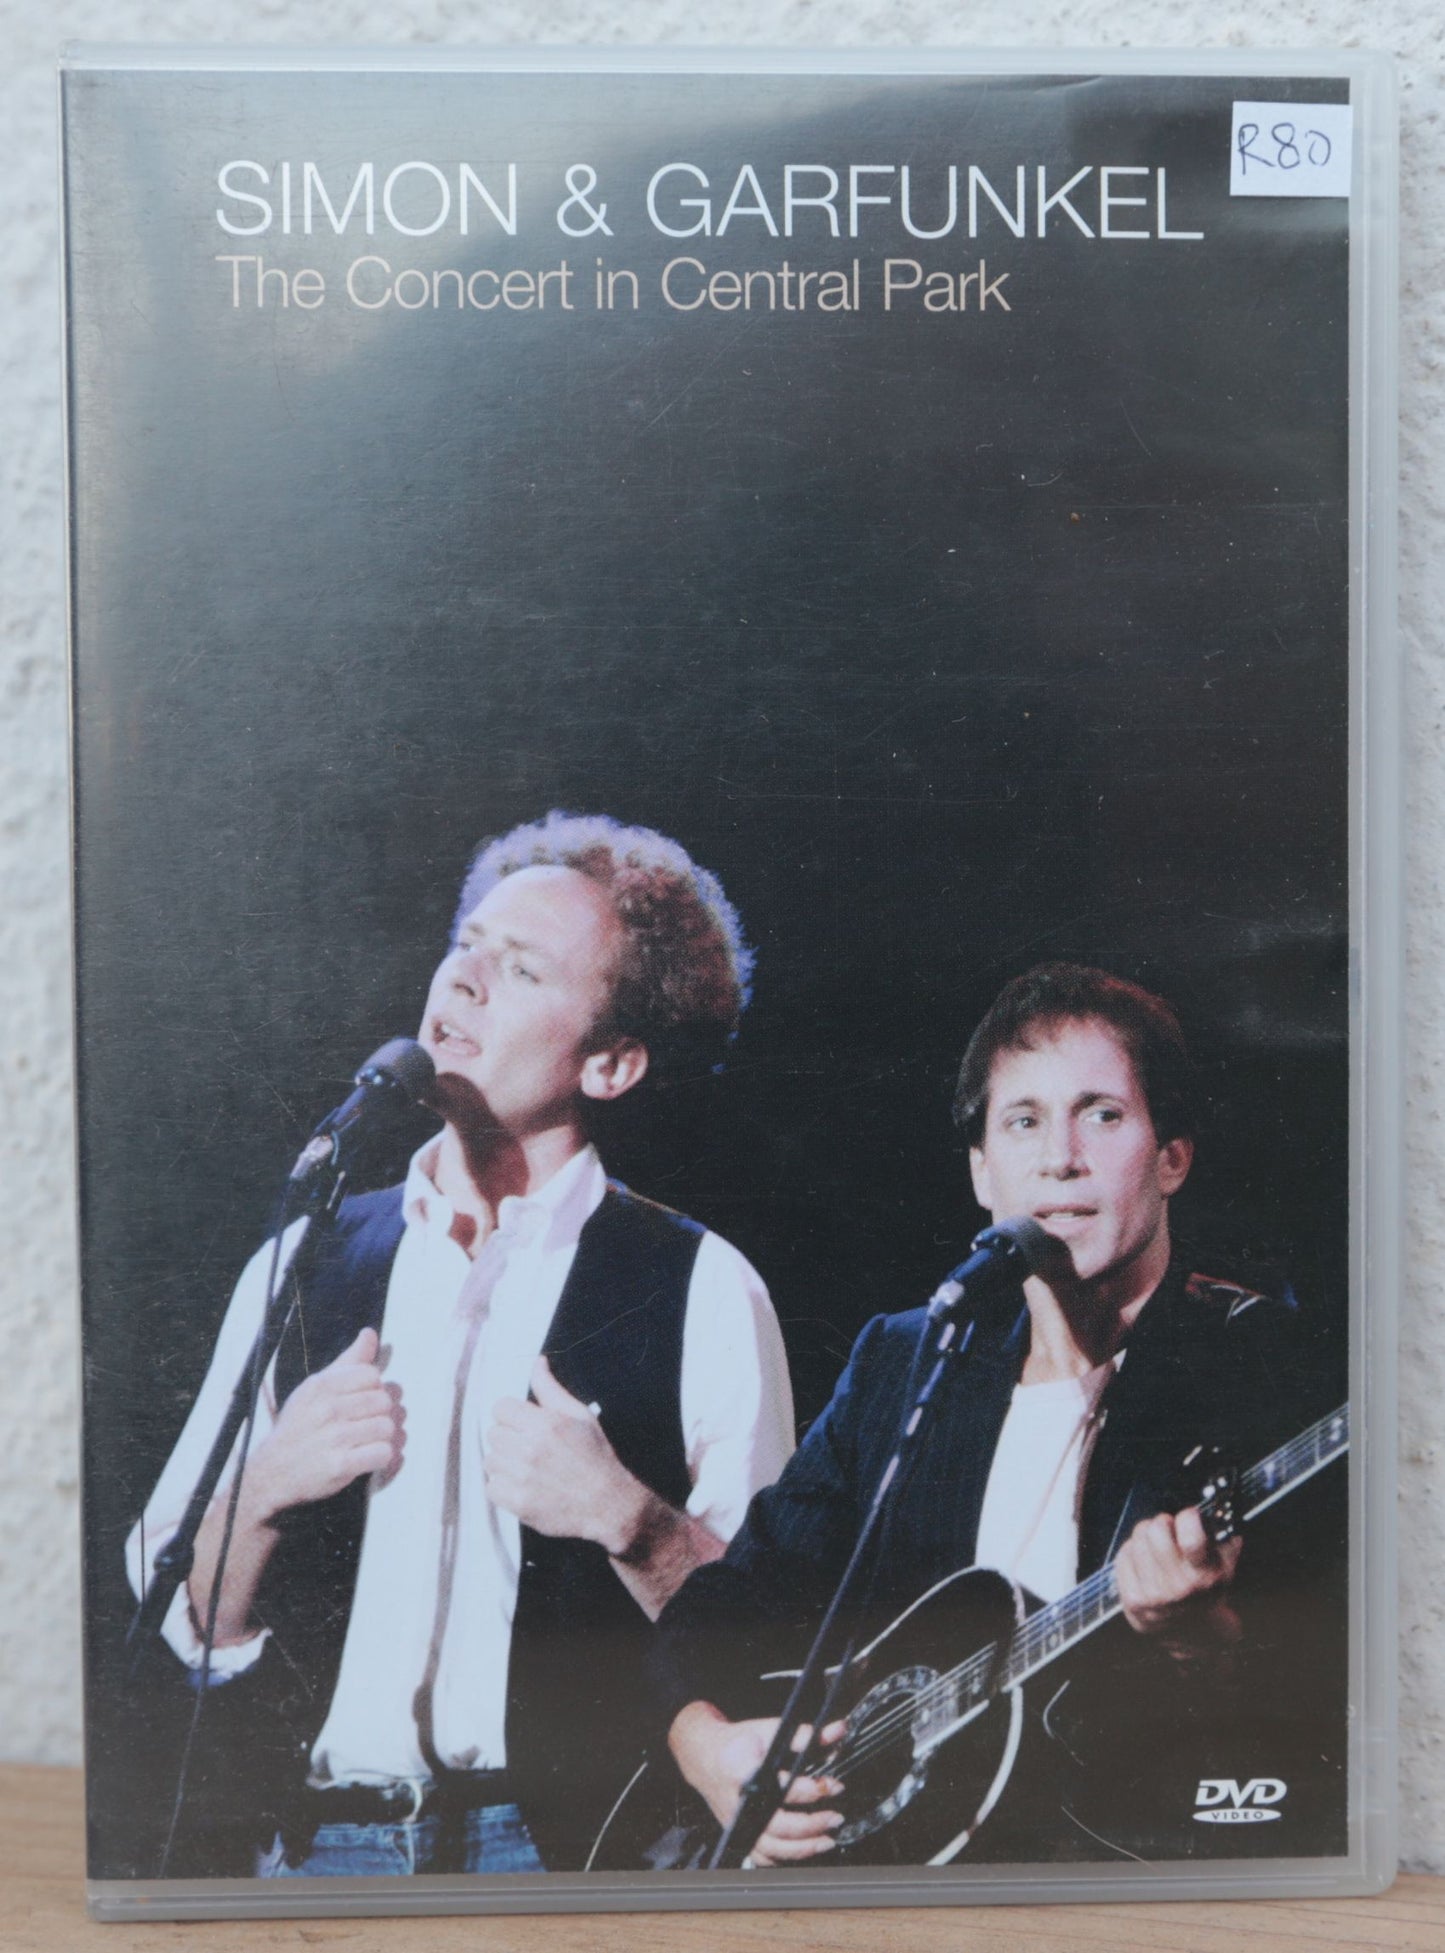 Simon & Garfunkel - The concert in Central Park (dvd)